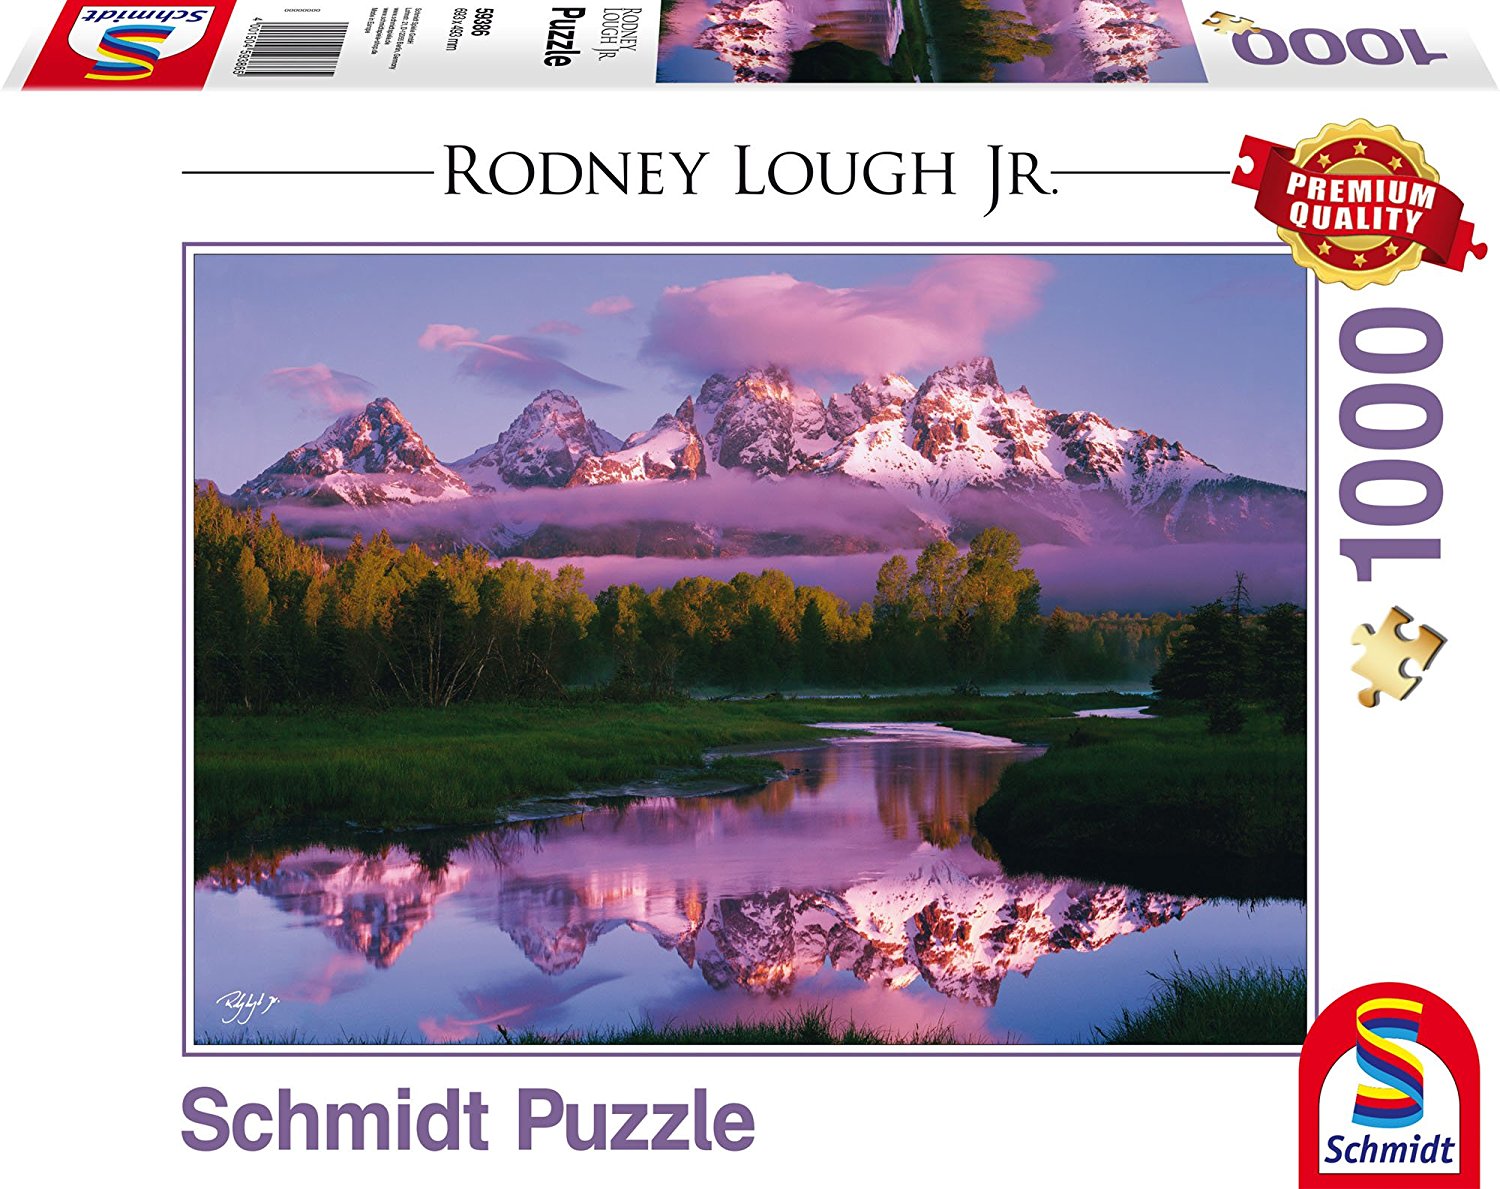  Puzzle Rodney Lough 1000 Piezas Canyon Song Schmidt Spiele Puzzle 59387 